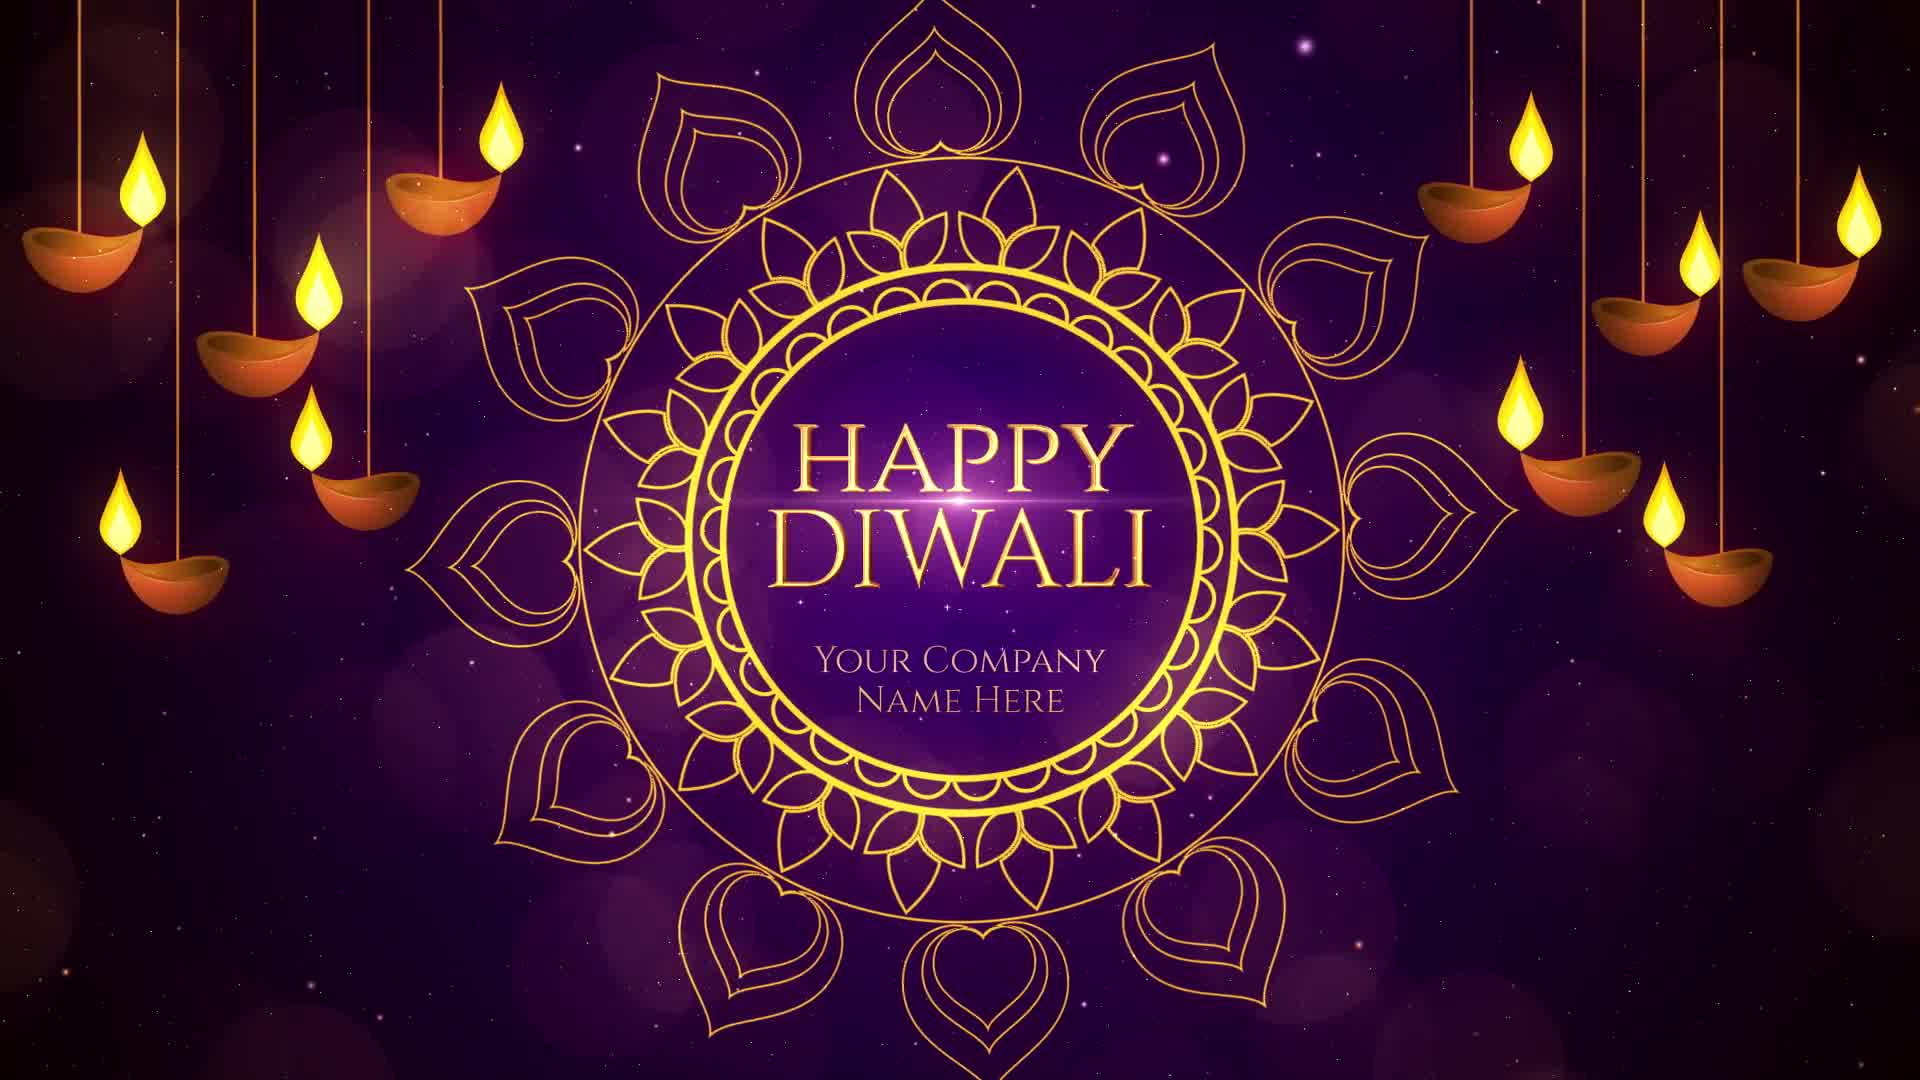 Diwali Wishes Premiere Pro Videohive 24824181 Premiere Pro Image 8